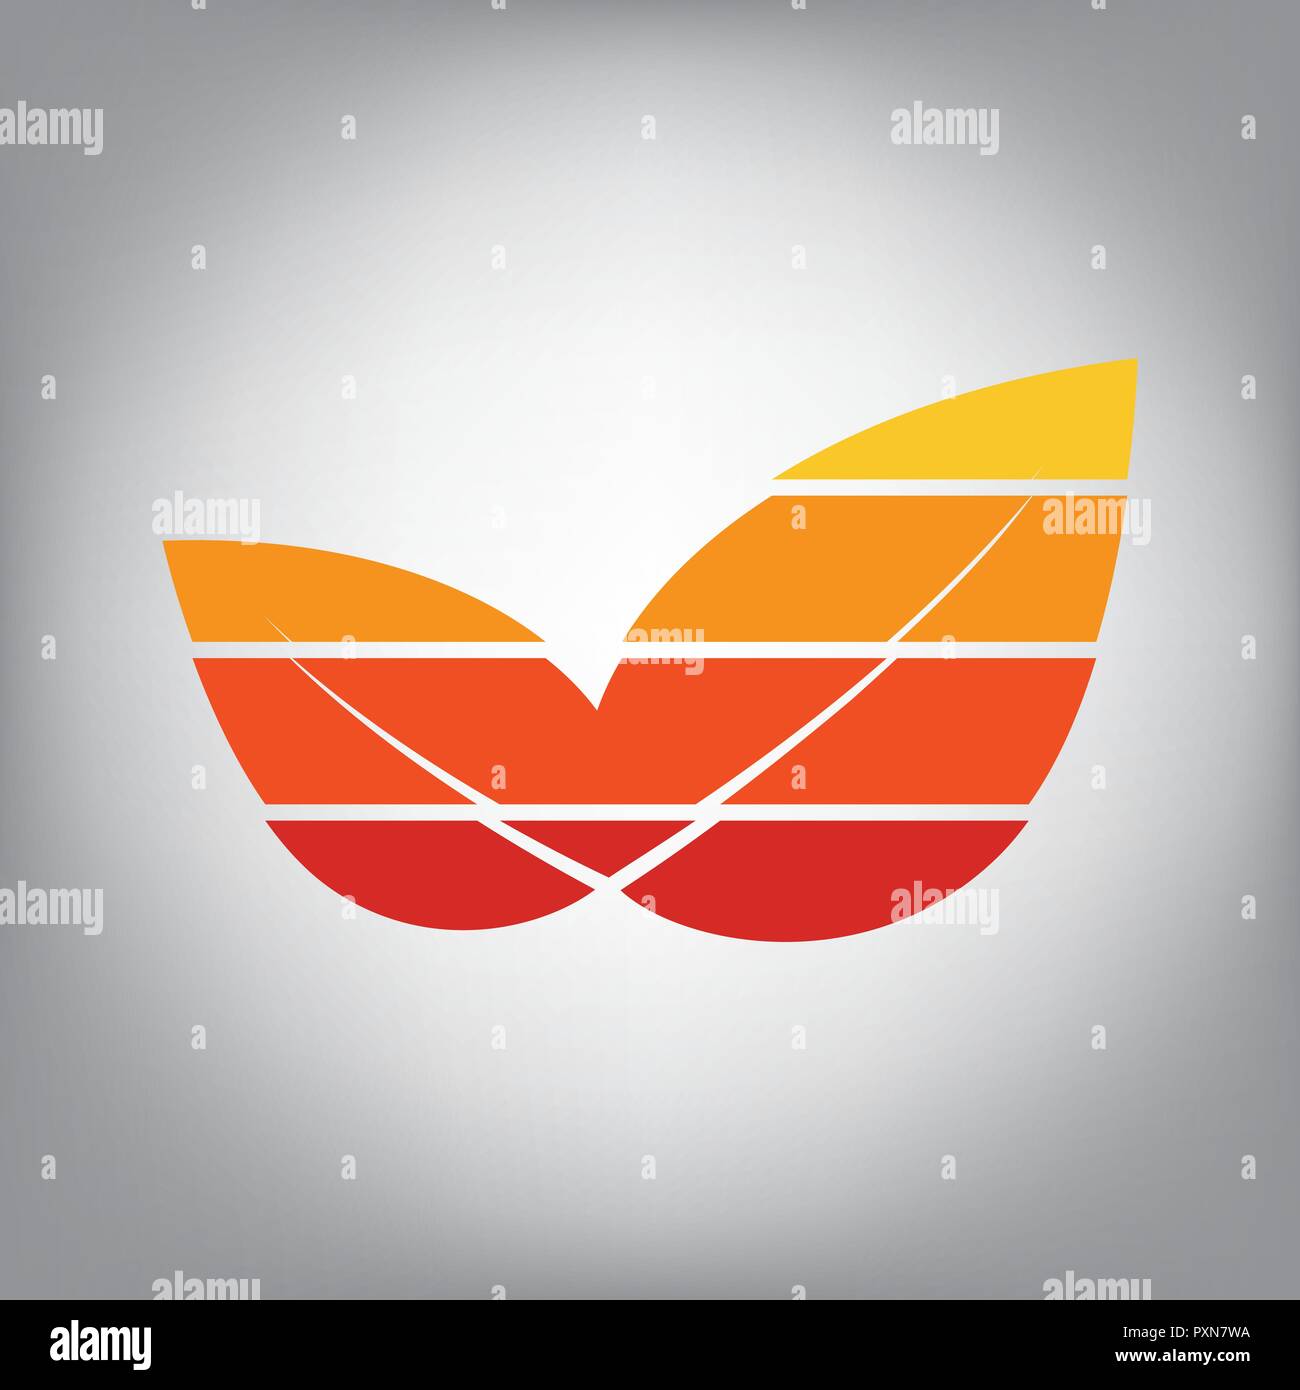 Leaf zeichen Abbildung. Vektor. Horizontal geschnitten Symbol mit Farben aus dem sonnigen Gradient in grauen Hintergrund. Stock Vektor